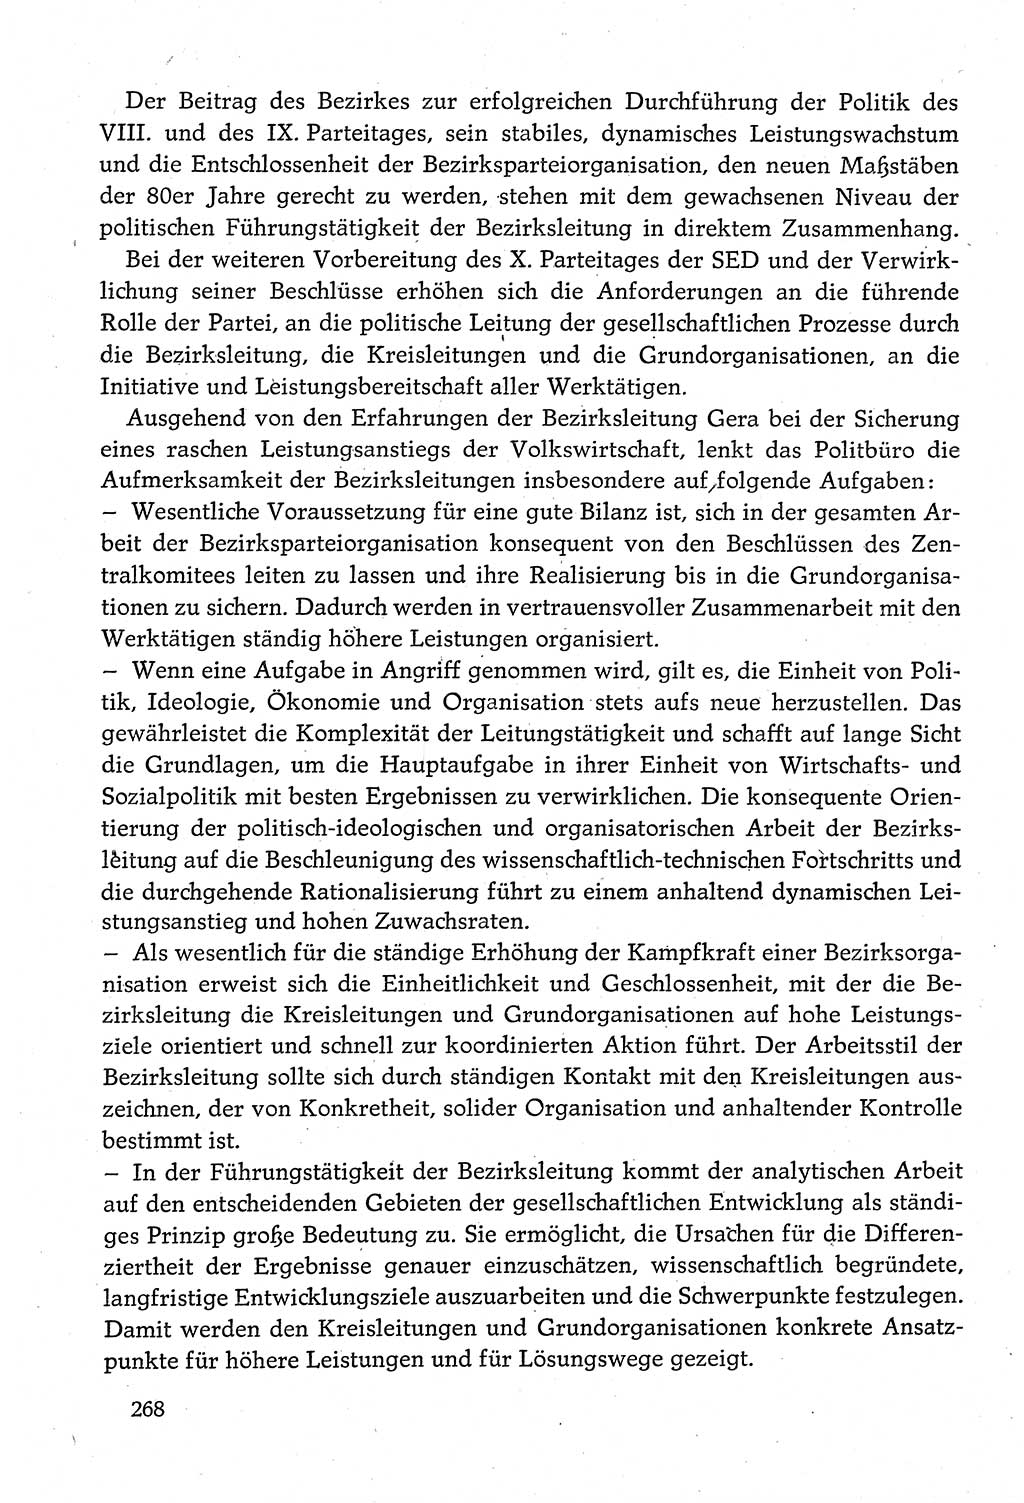 Dokumente der Sozialistischen Einheitspartei Deutschlands (SED) [Deutsche Demokratische Republik (DDR)] 1980-1981, Seite 268 (Dok. SED DDR 1980-1981, S. 268)